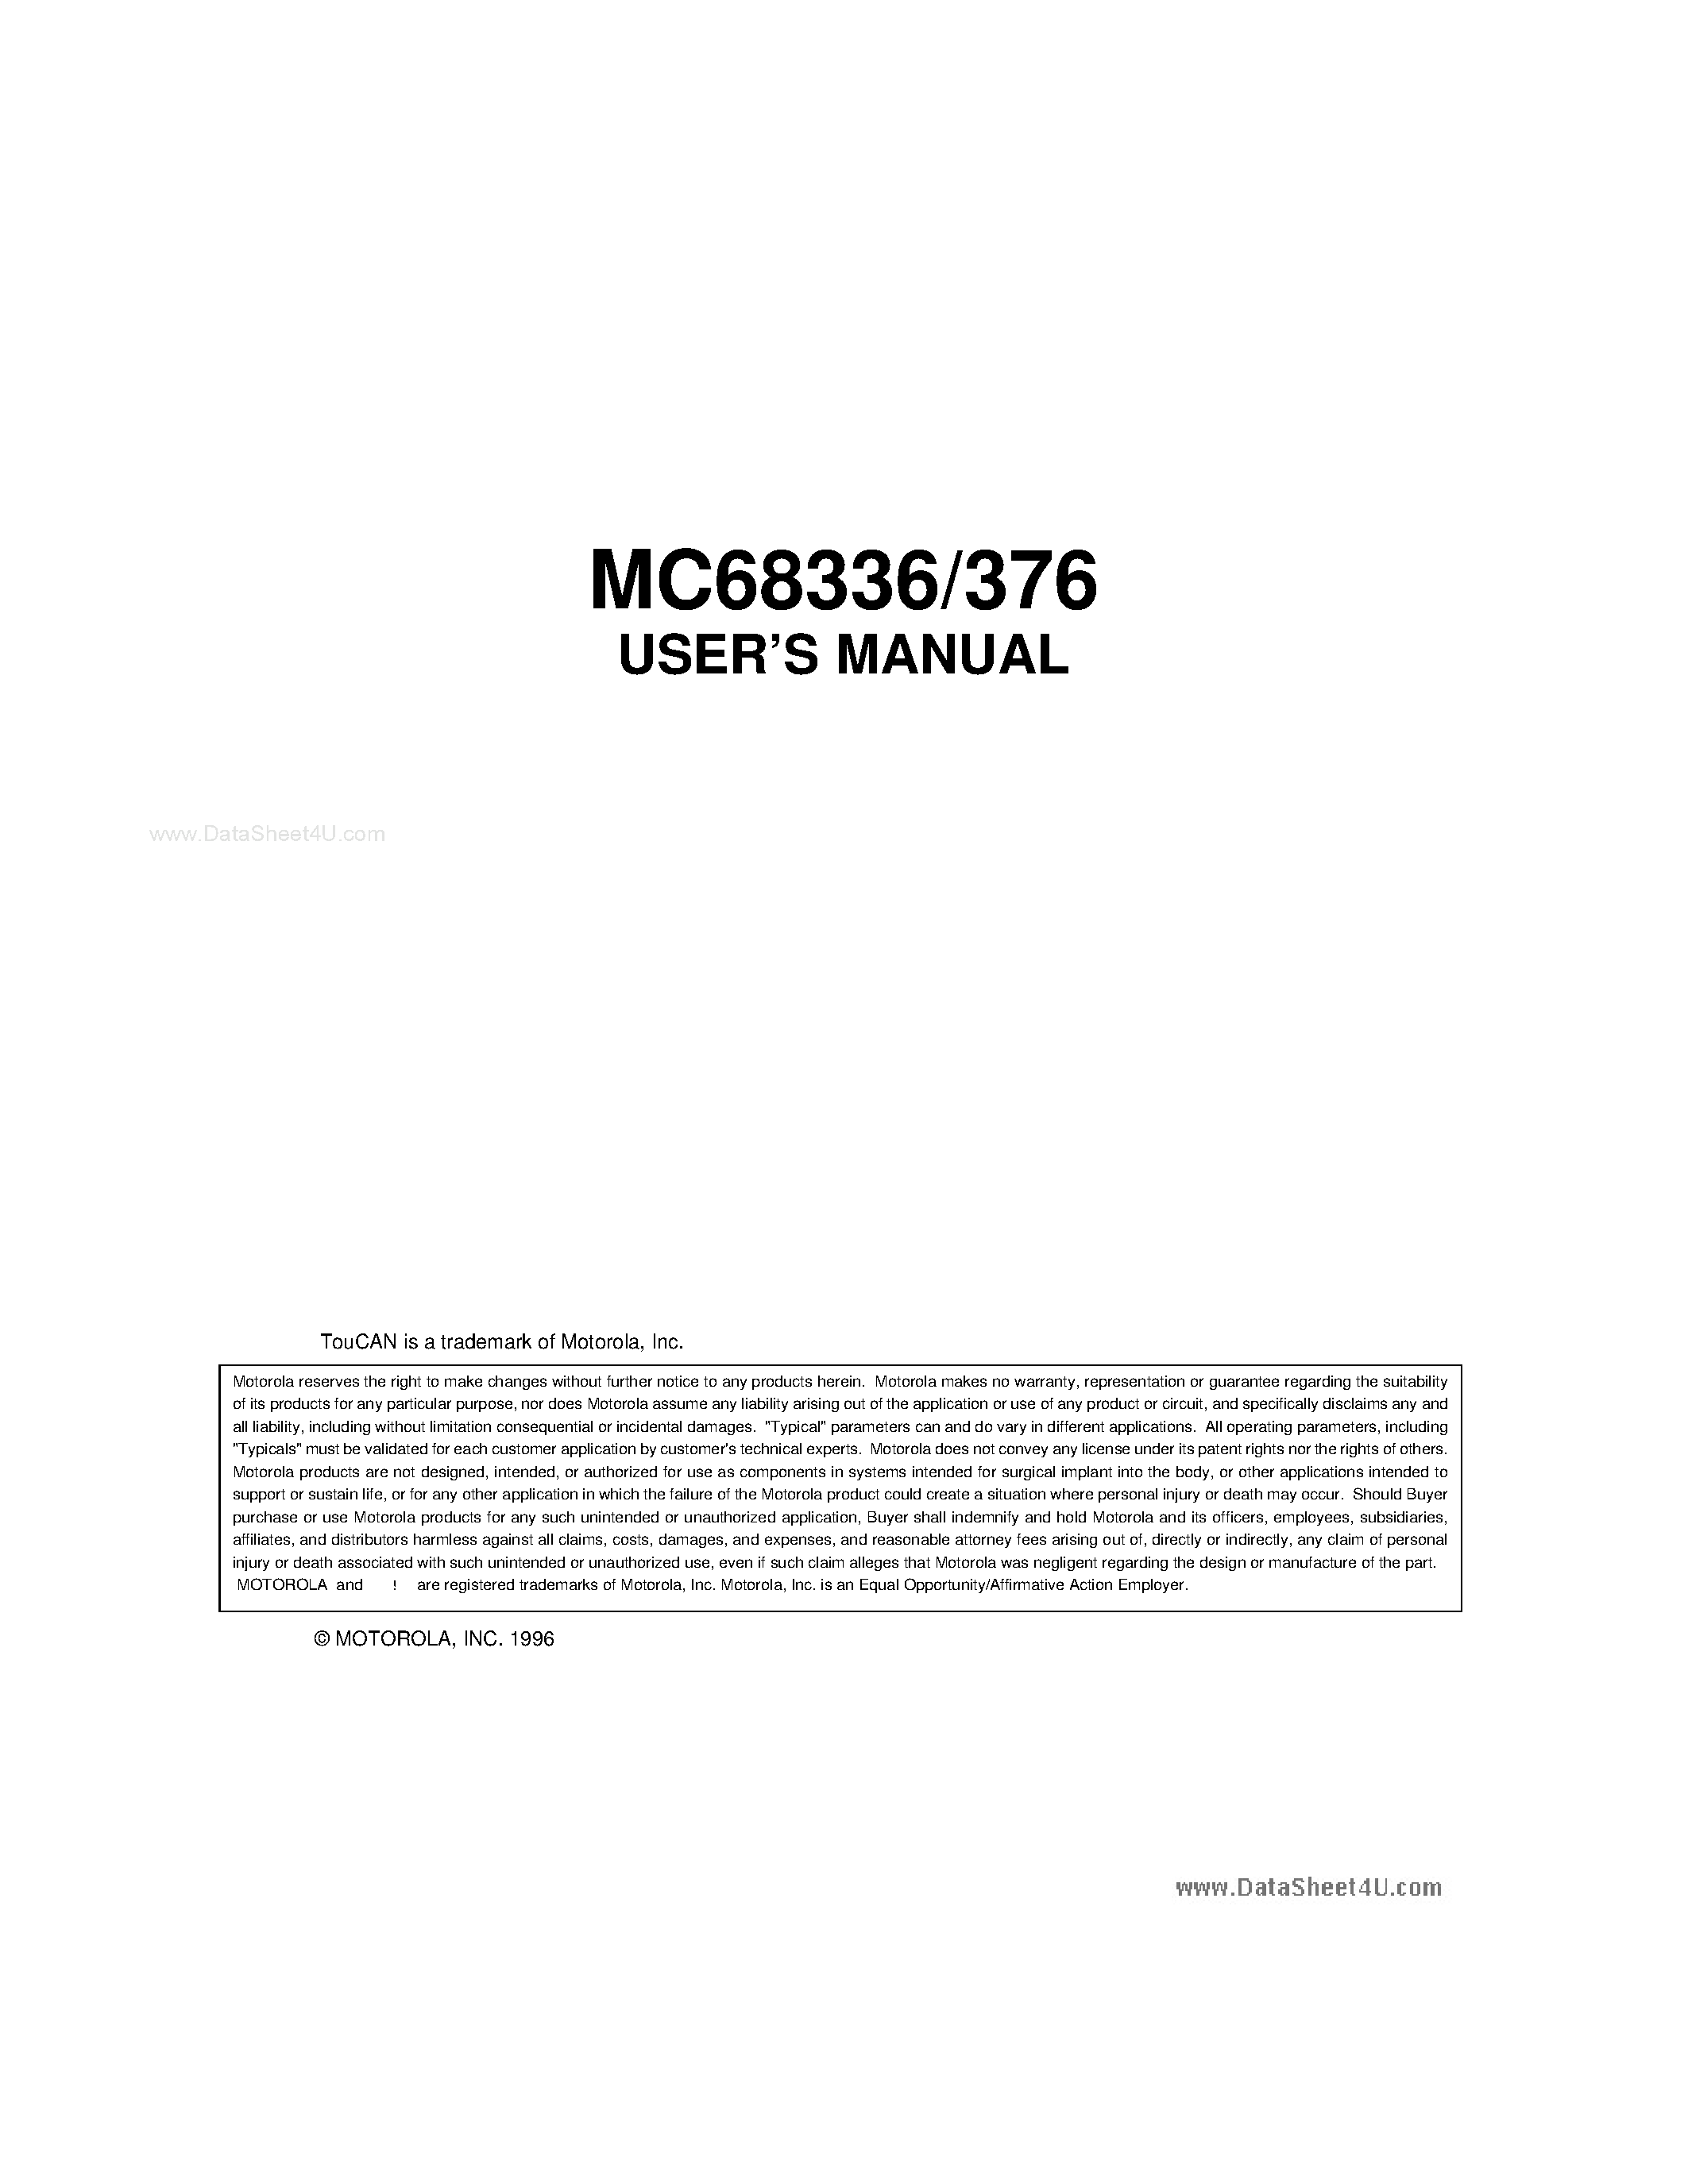 Даташит MC68336 - (MC68336 / MC68376) User Manual страница 1